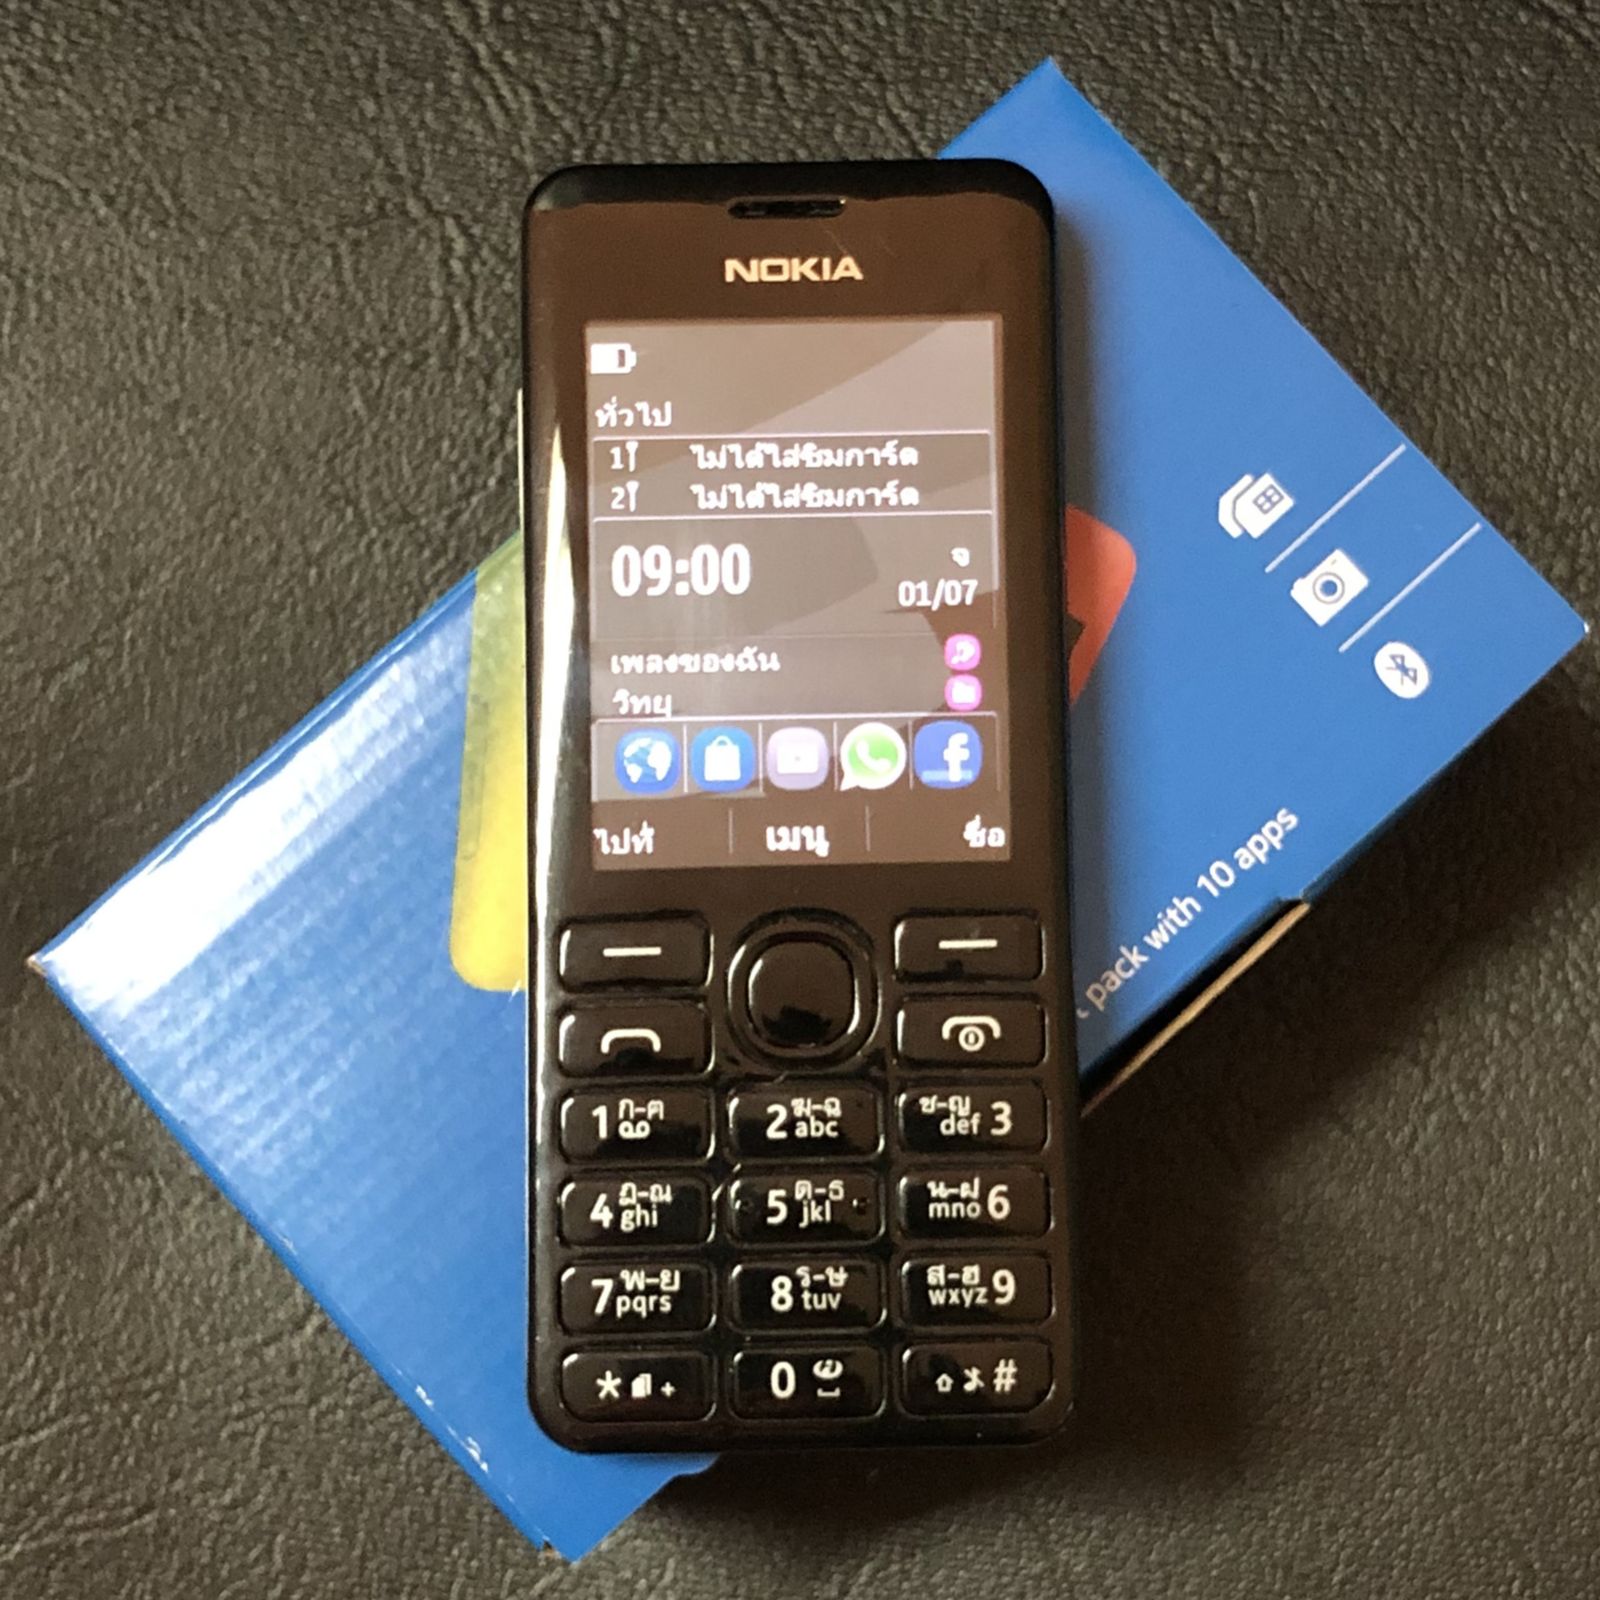 โทรศัพท์มือถือ Nokia 206 ปุ่มกดมือถือ ตัวเลขใหญ่ สัญญาณดีมาก ลำโพงเสียงดัง ใส่ได้AIS DTAC TRUE ซิม4G